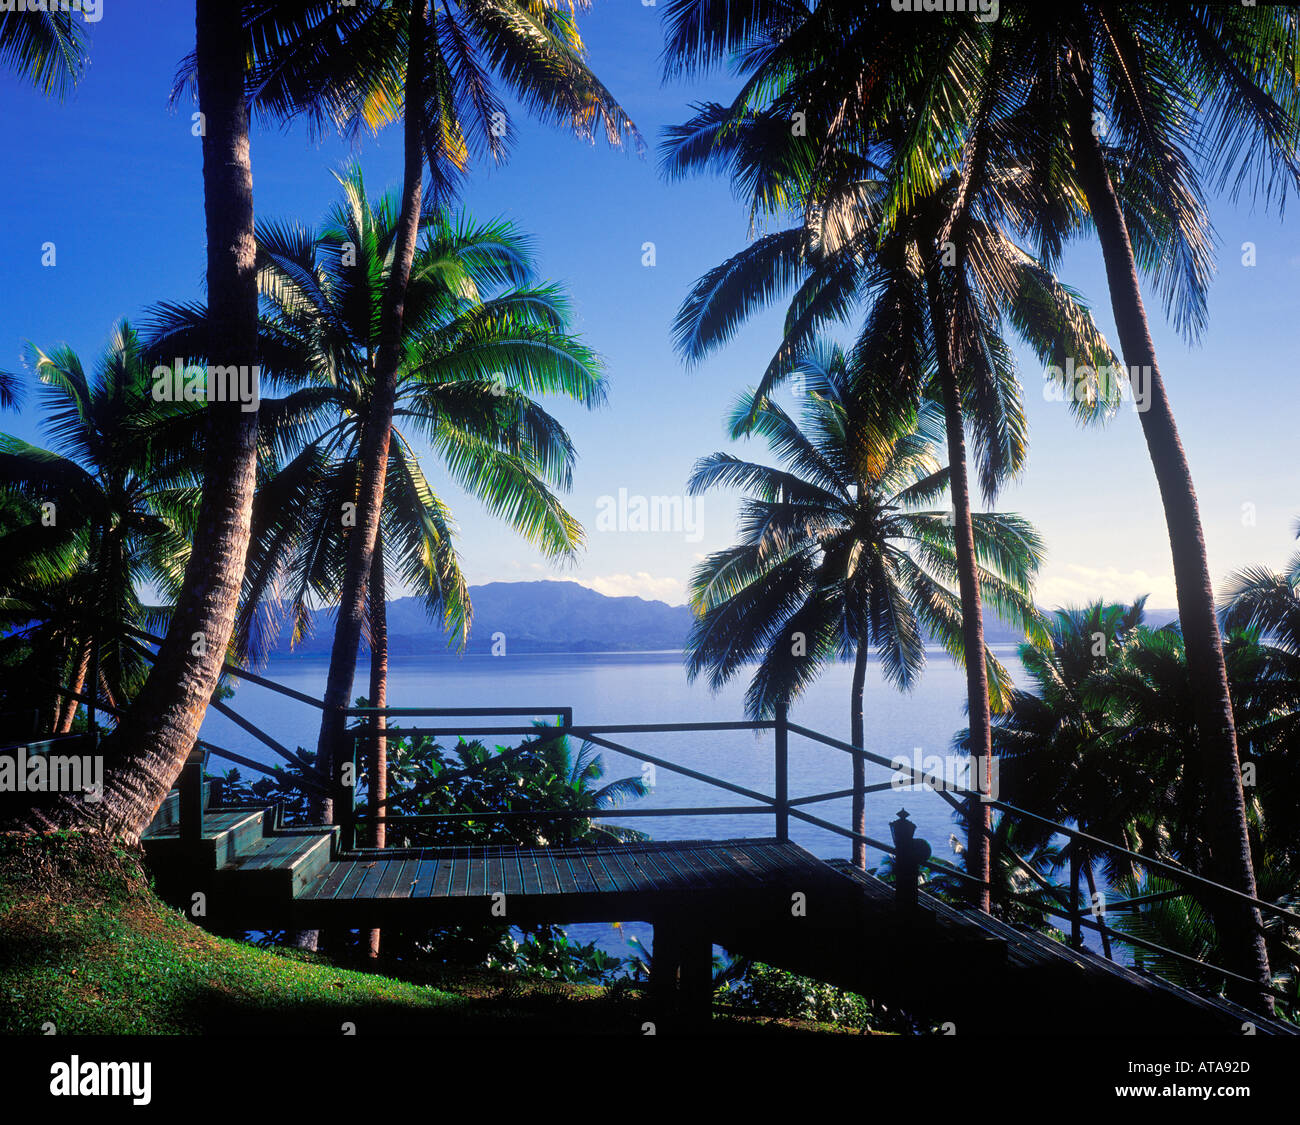 tropical resort scene Savusavu Fiji Stock Photo